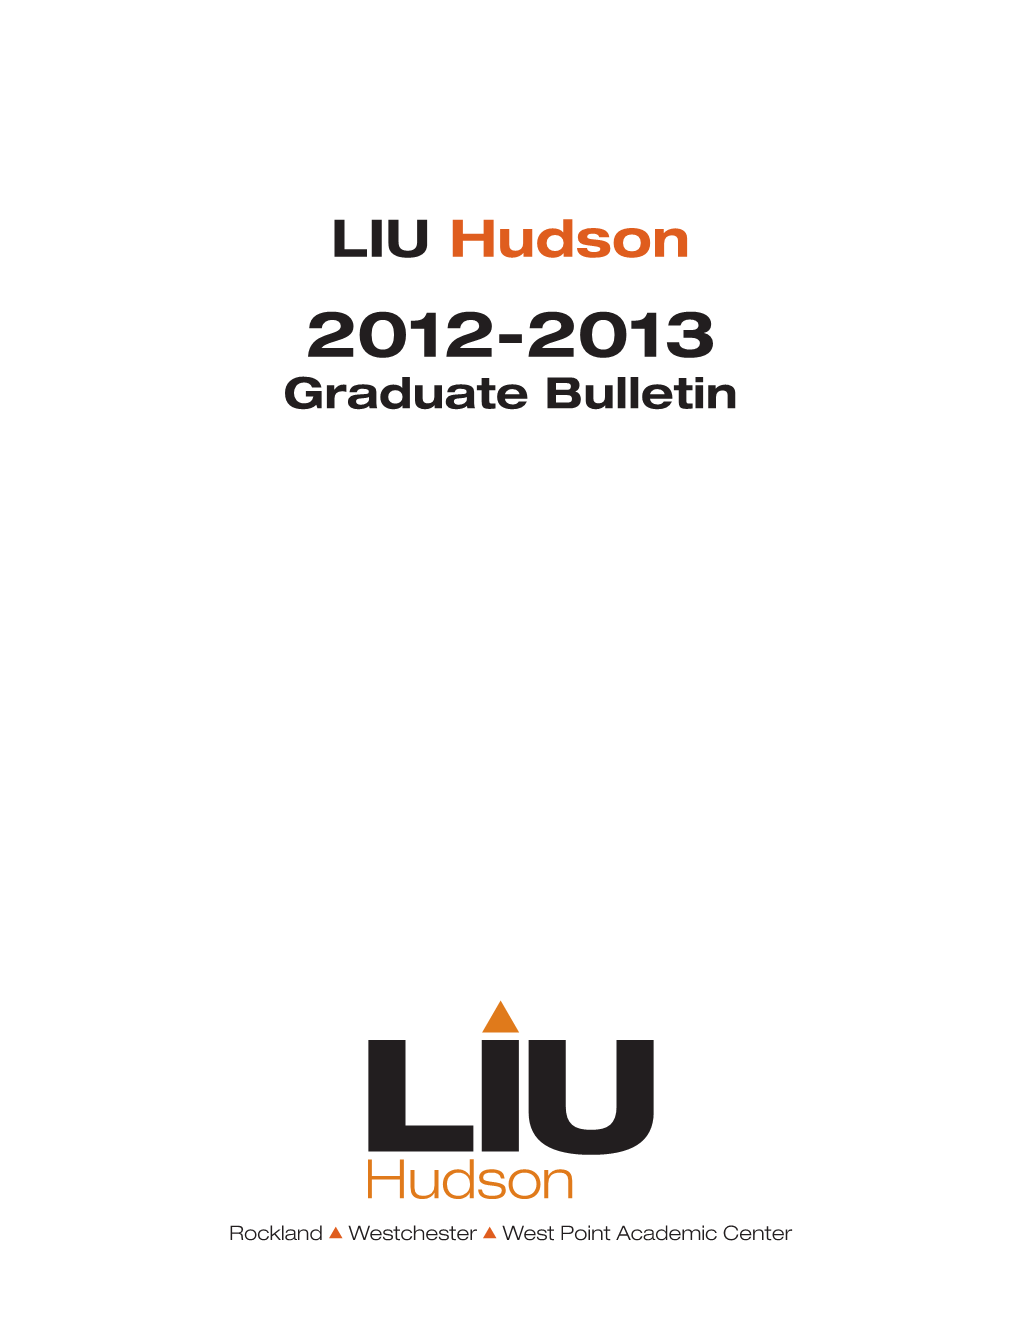 LIU Hudson 2012-2013 Graduate Bulletin